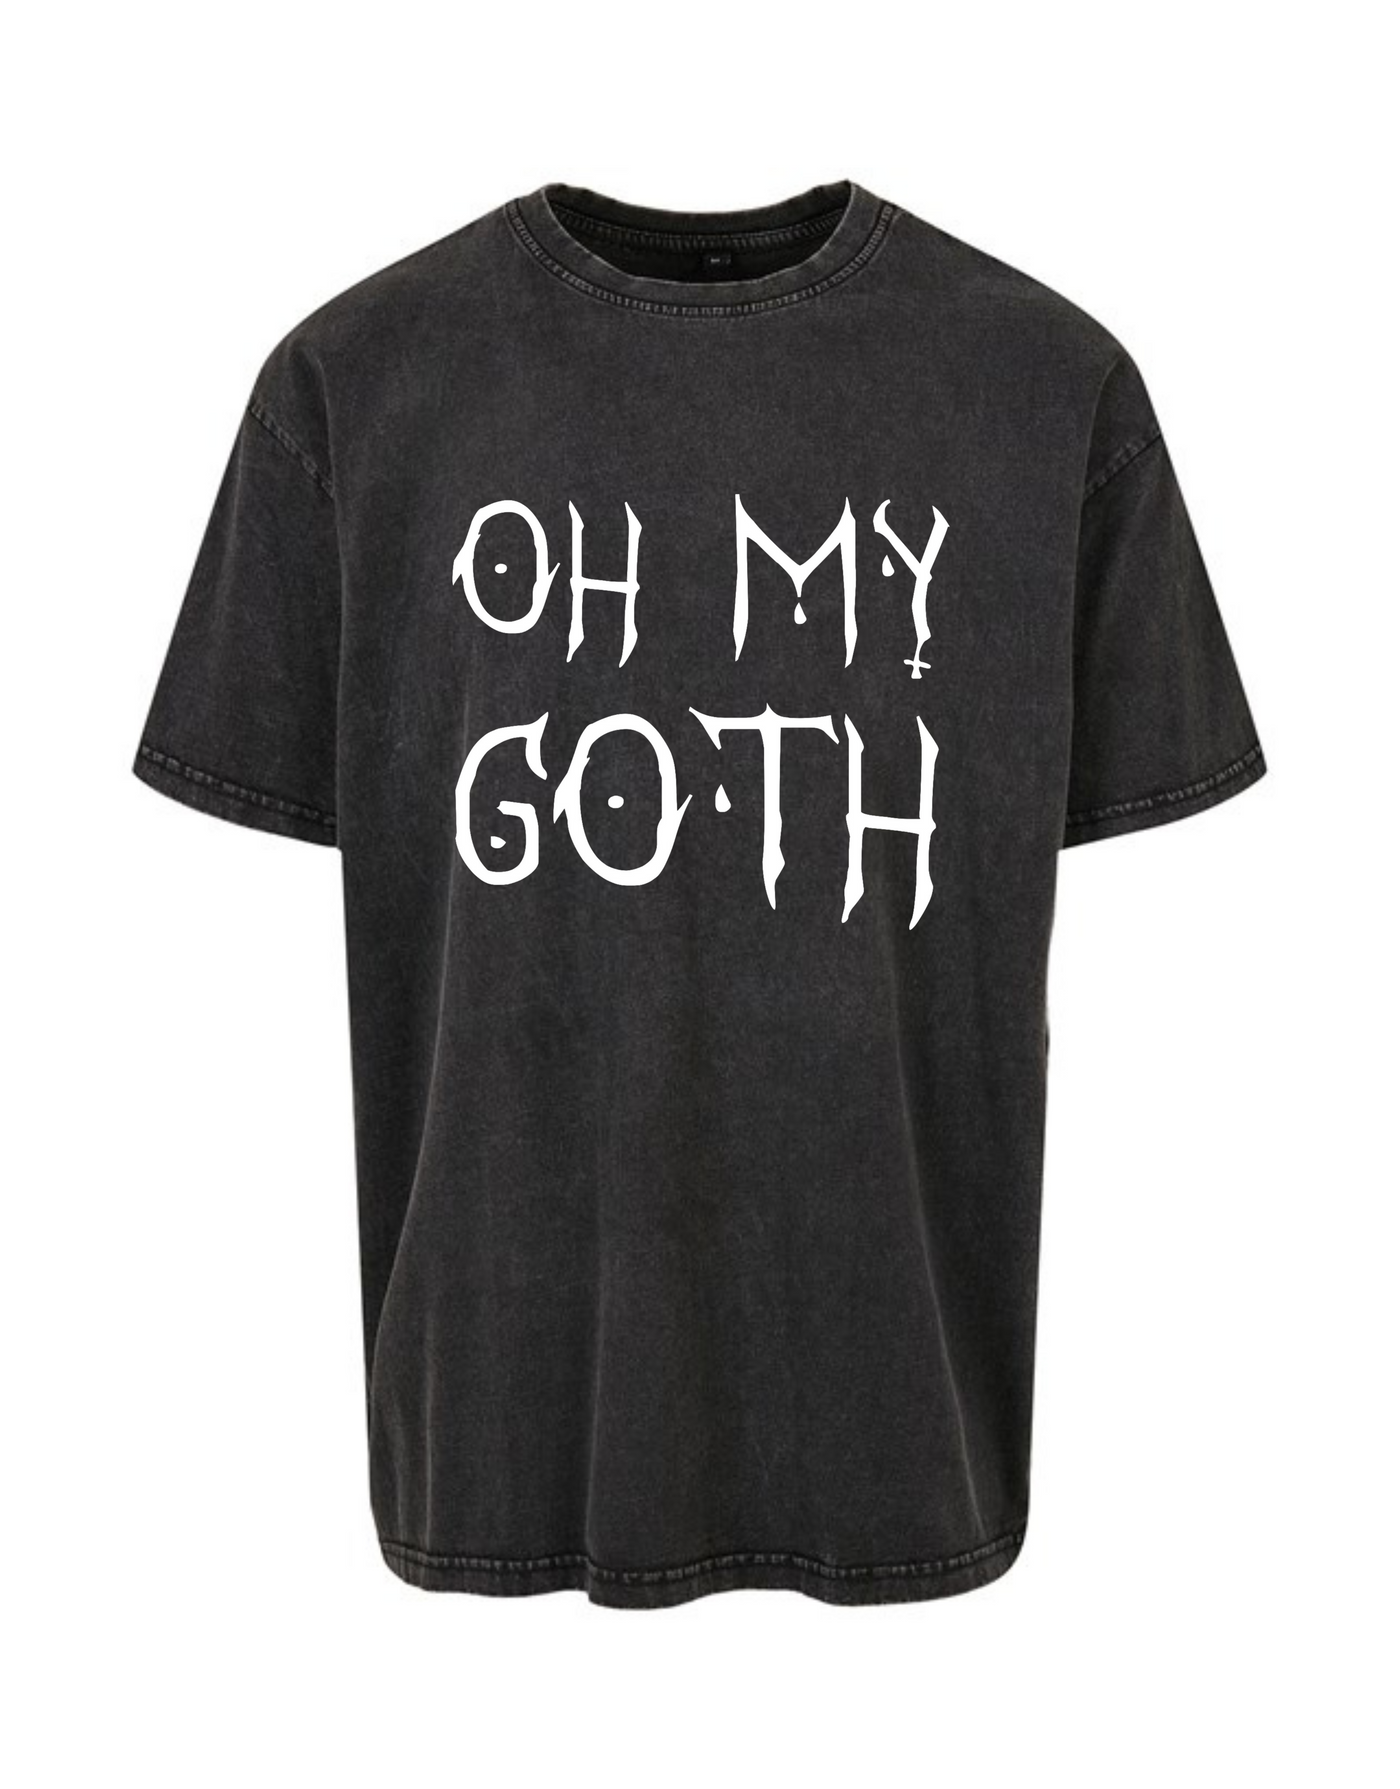 Black "Oh My Goth" Unisex Acid Wash T-Shirt